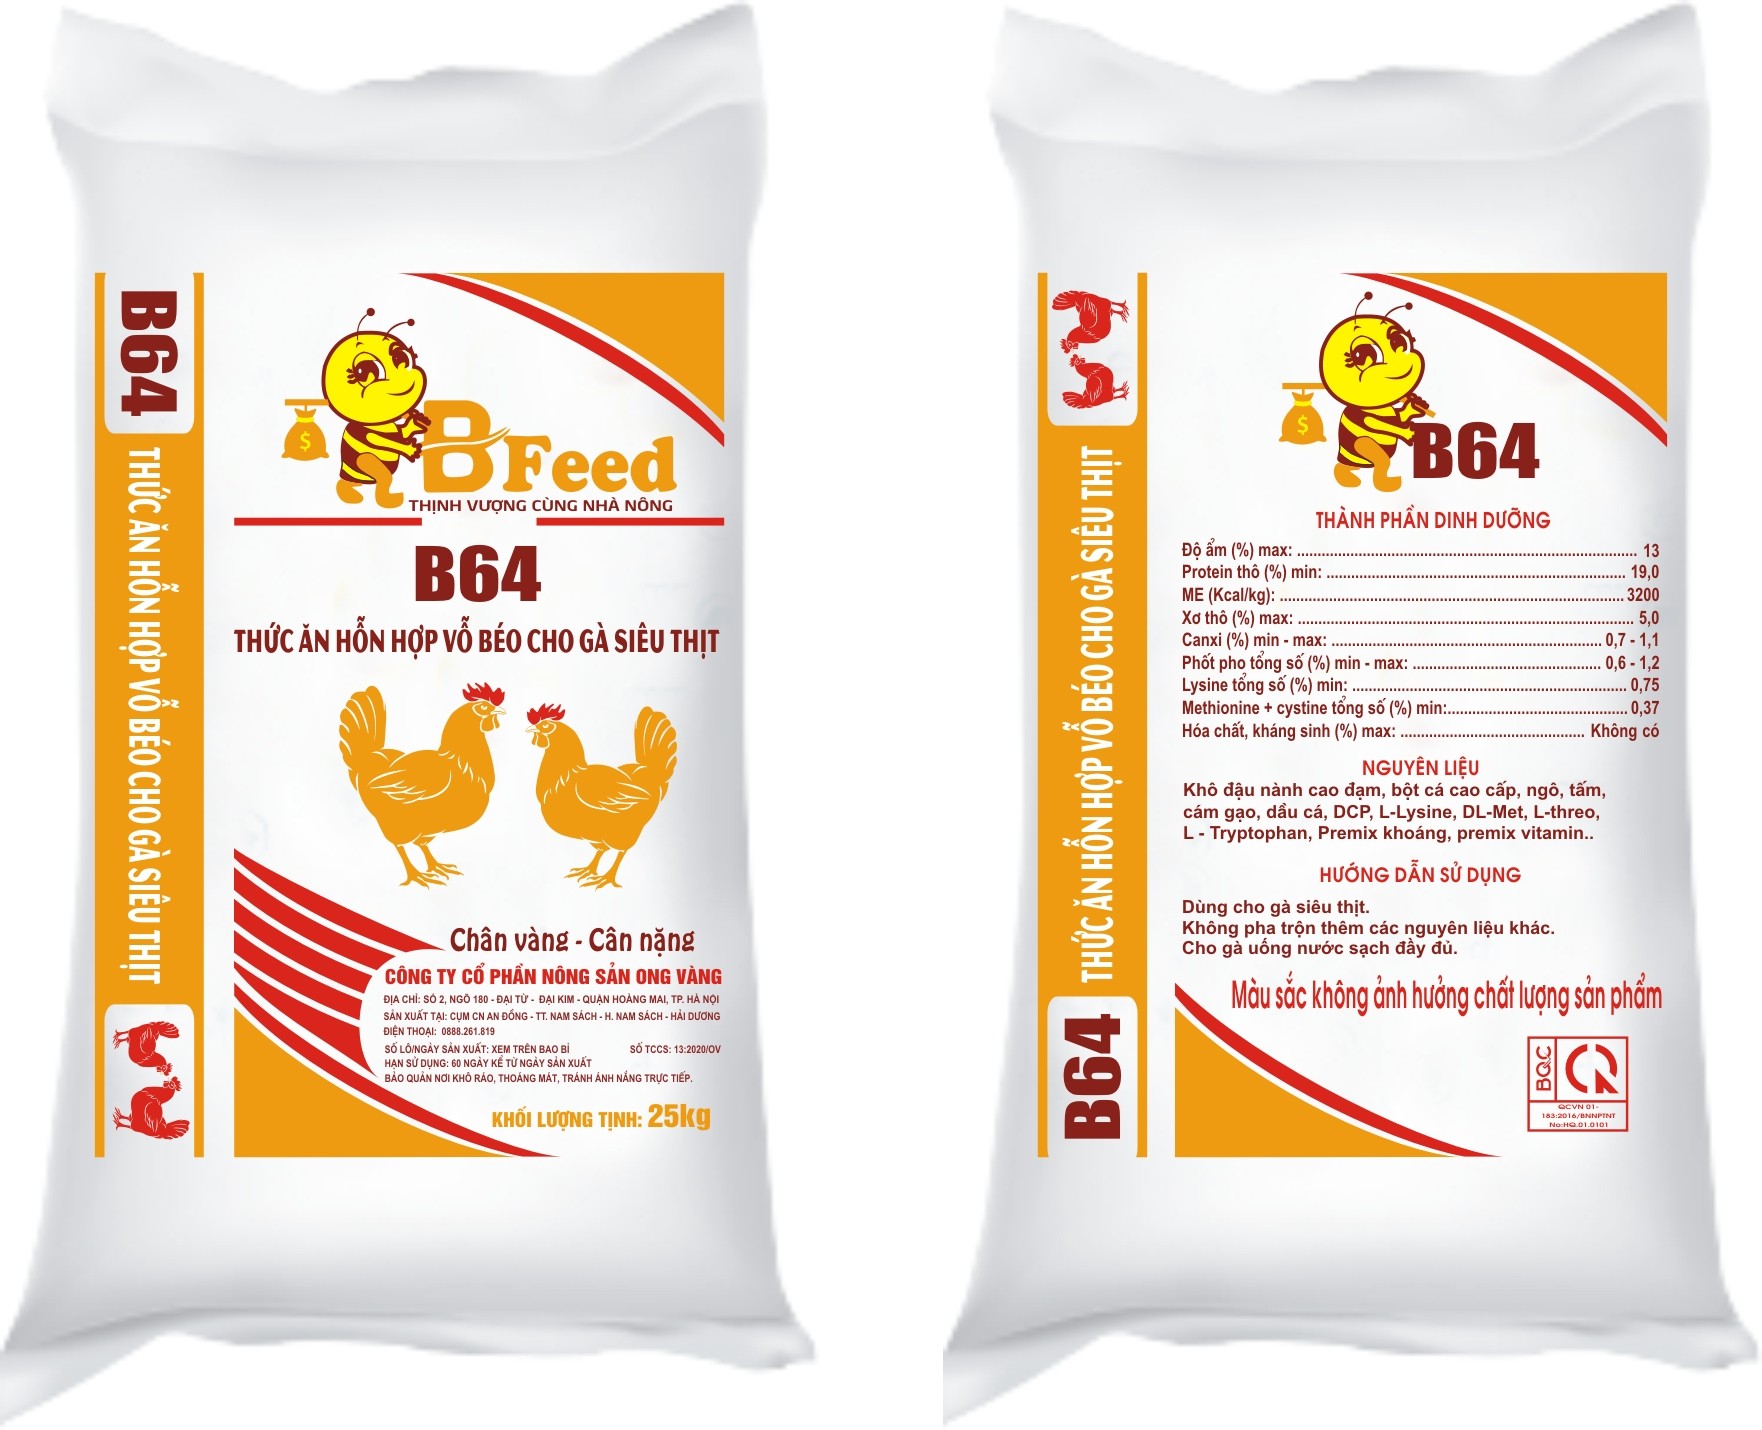 B64 - Thức ăn hỗn hợp vỗ béo cho gà siêu thịt